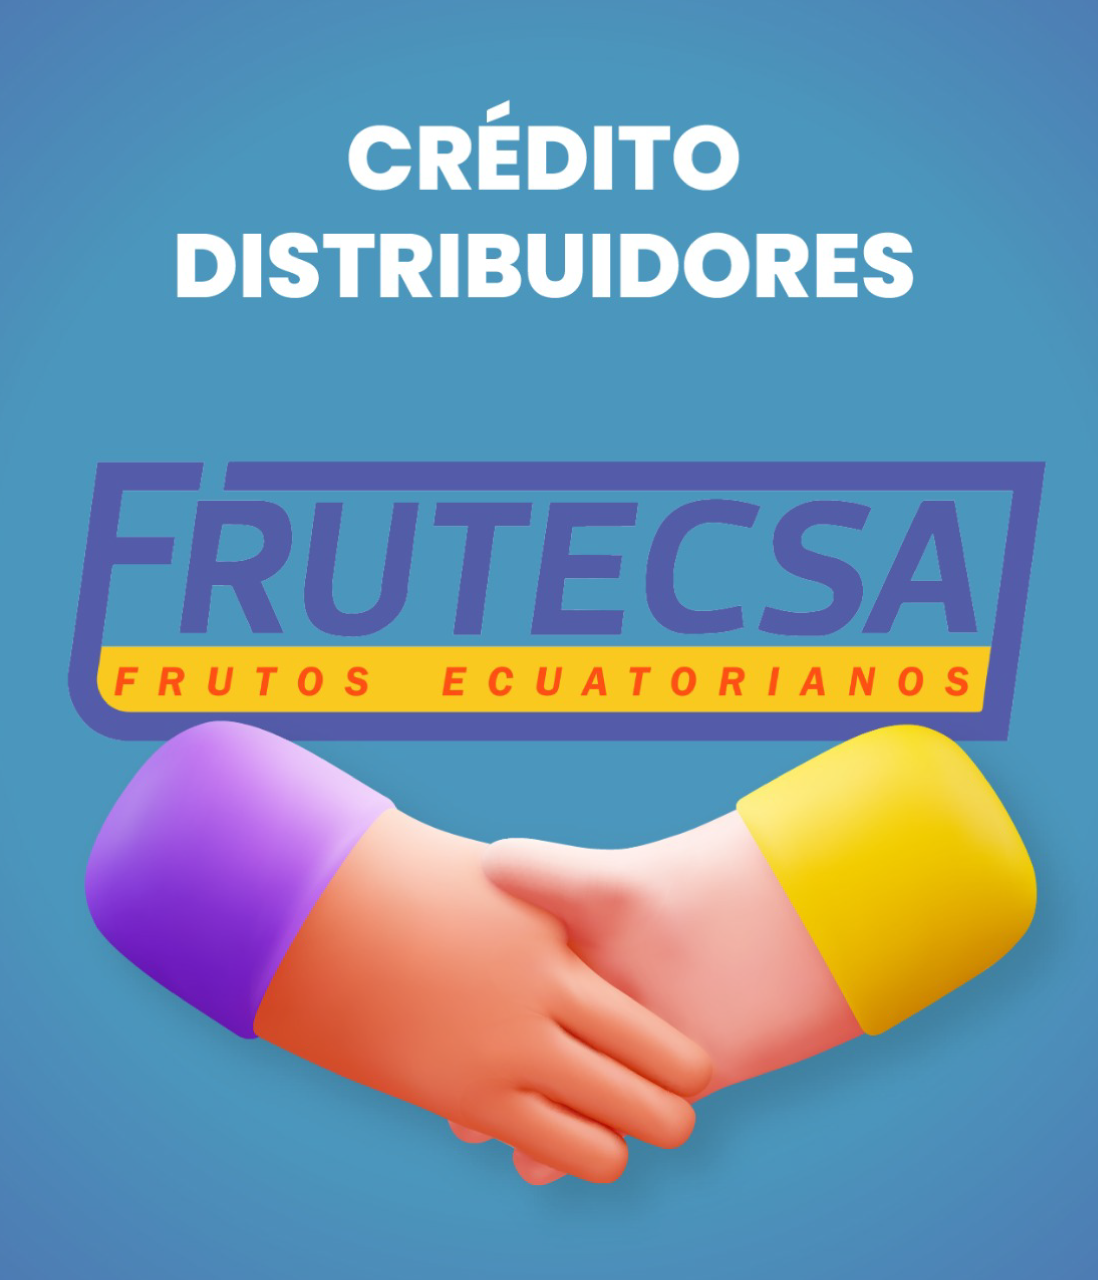 Crédito para distribuidores frutecsa ecuador